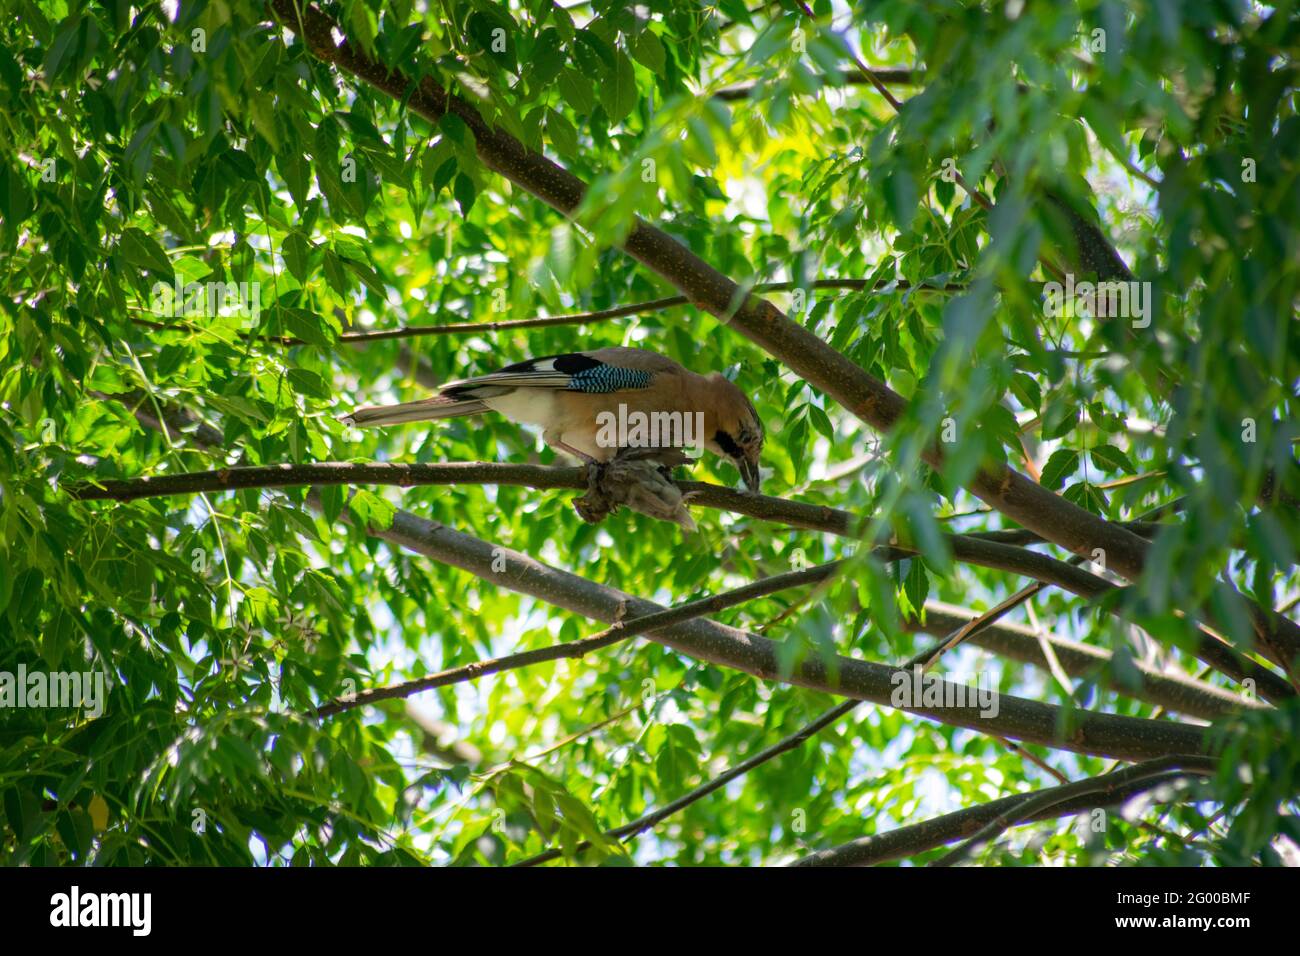 Seltenes Foto von Jay Bird, der einen jungen Sperling nach der Jagd frisst, Fleischfresser von Vögeln. Eichelhäher, der einen jungen Vogel frisst, agressive Jagd. Stockfoto